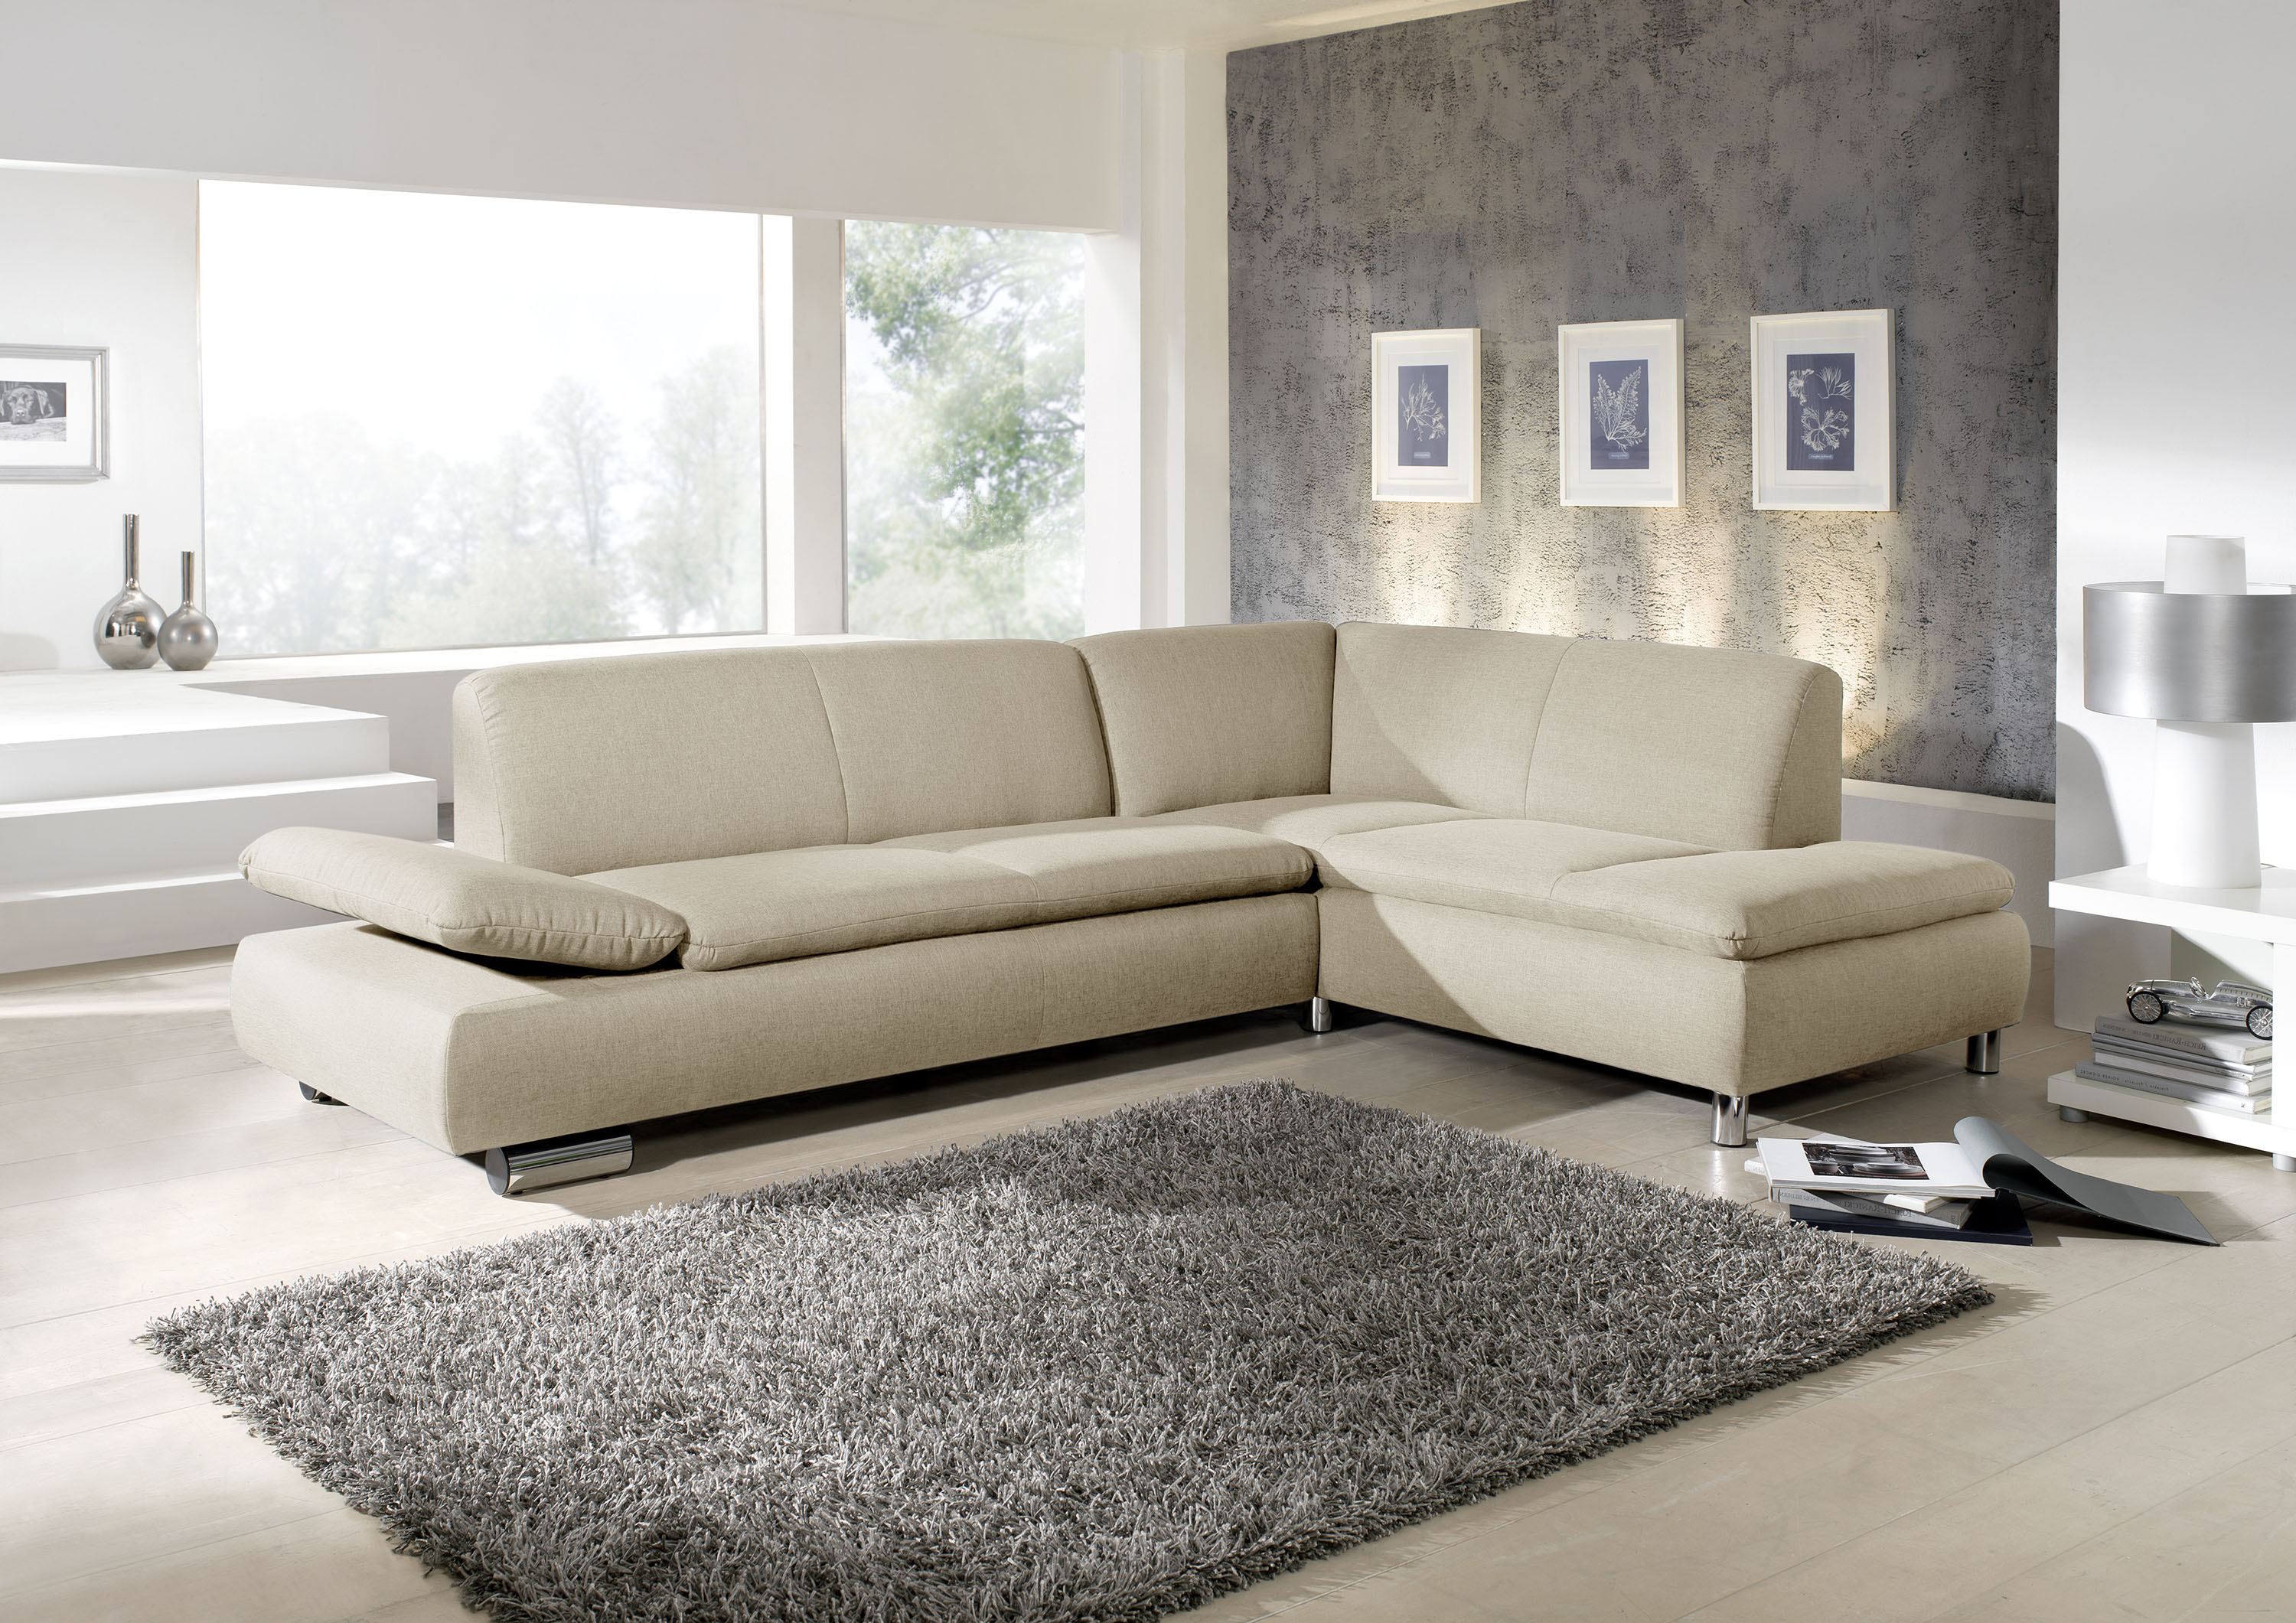 modernes beiges ecksofa mit verchromten metallfüssen in einem schönen hellen wohnzimmer mit grossen grauen teppich